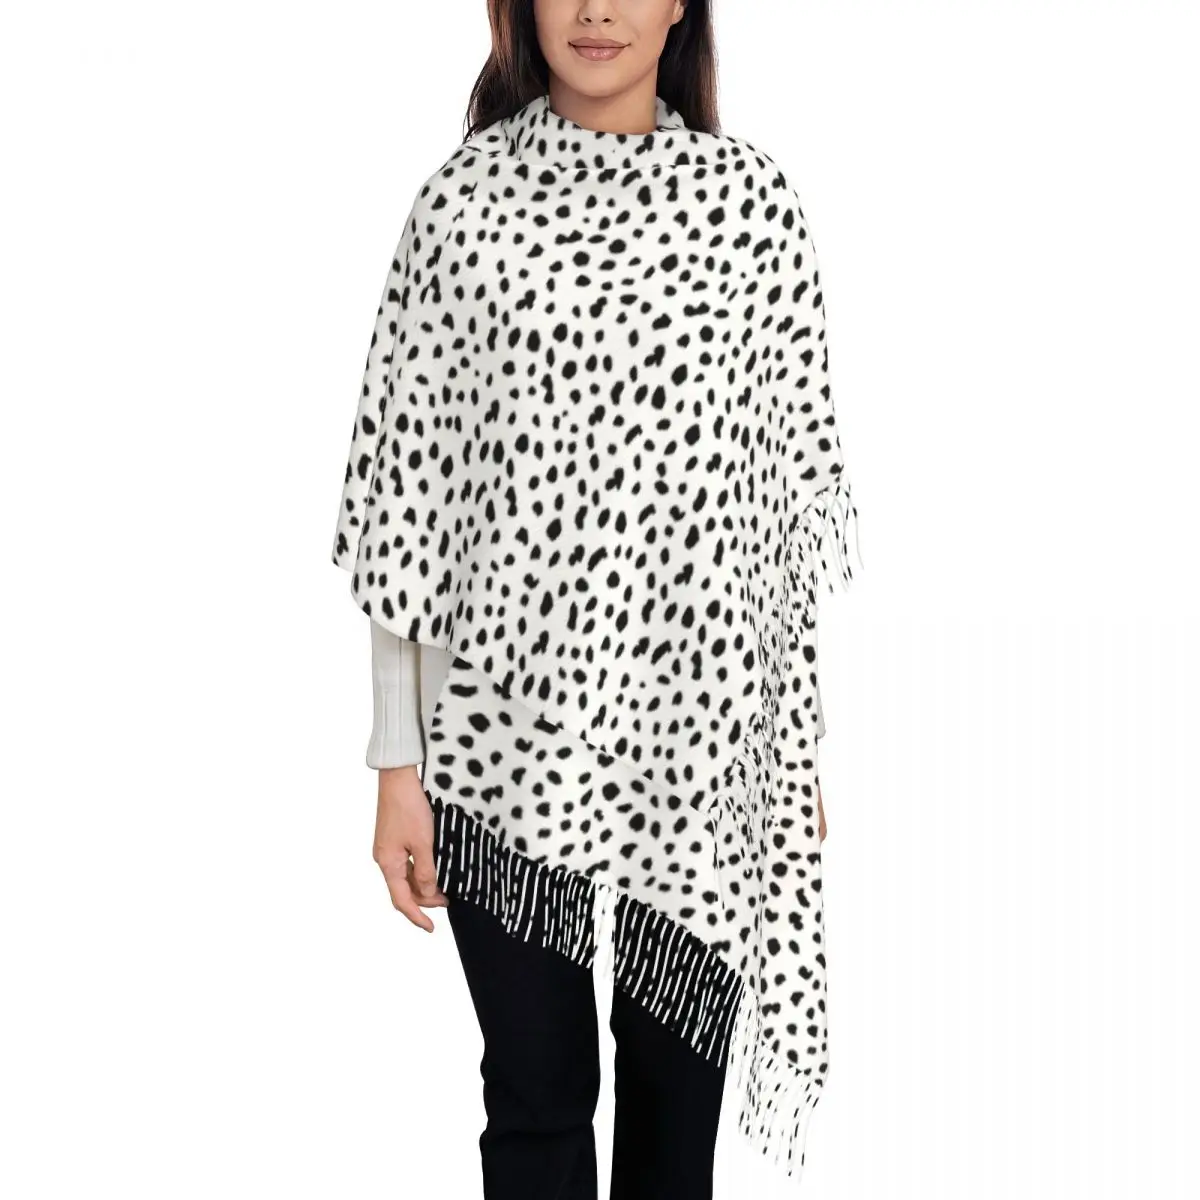 

Далматинский шарф с принтом собаки черно-белая теплая мягкая шаль шарф с кисточкой женские ретро большие шарфы зимний дизайн Bufanda Mujer